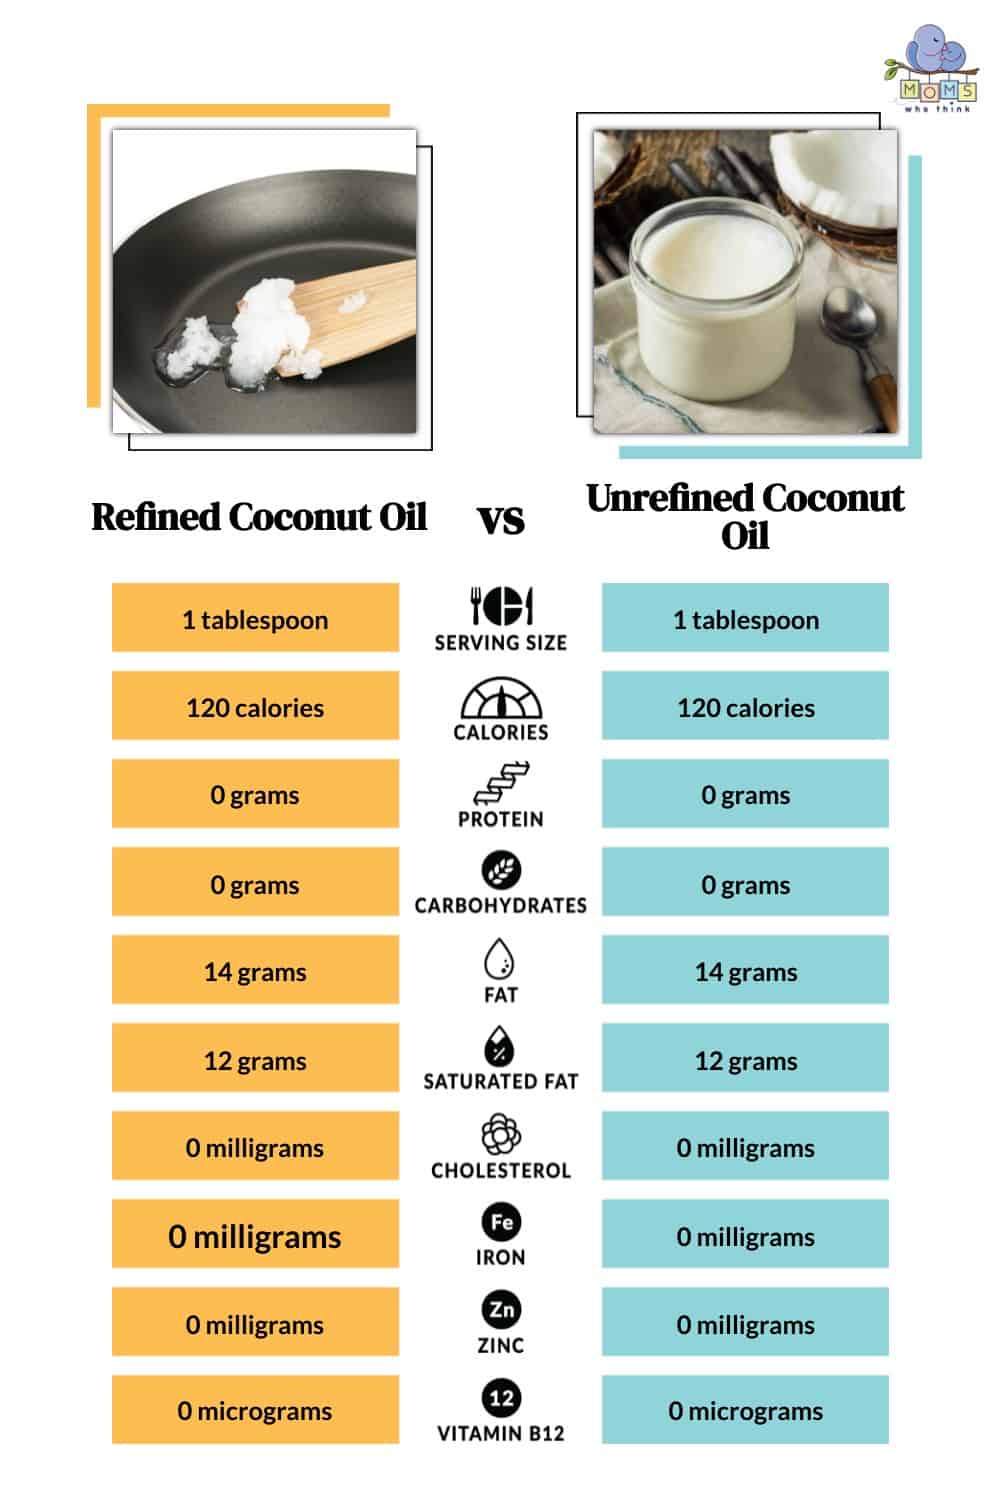 Refined Coconut Oil vs Unrefined Coconut Oil Nutritional Facts